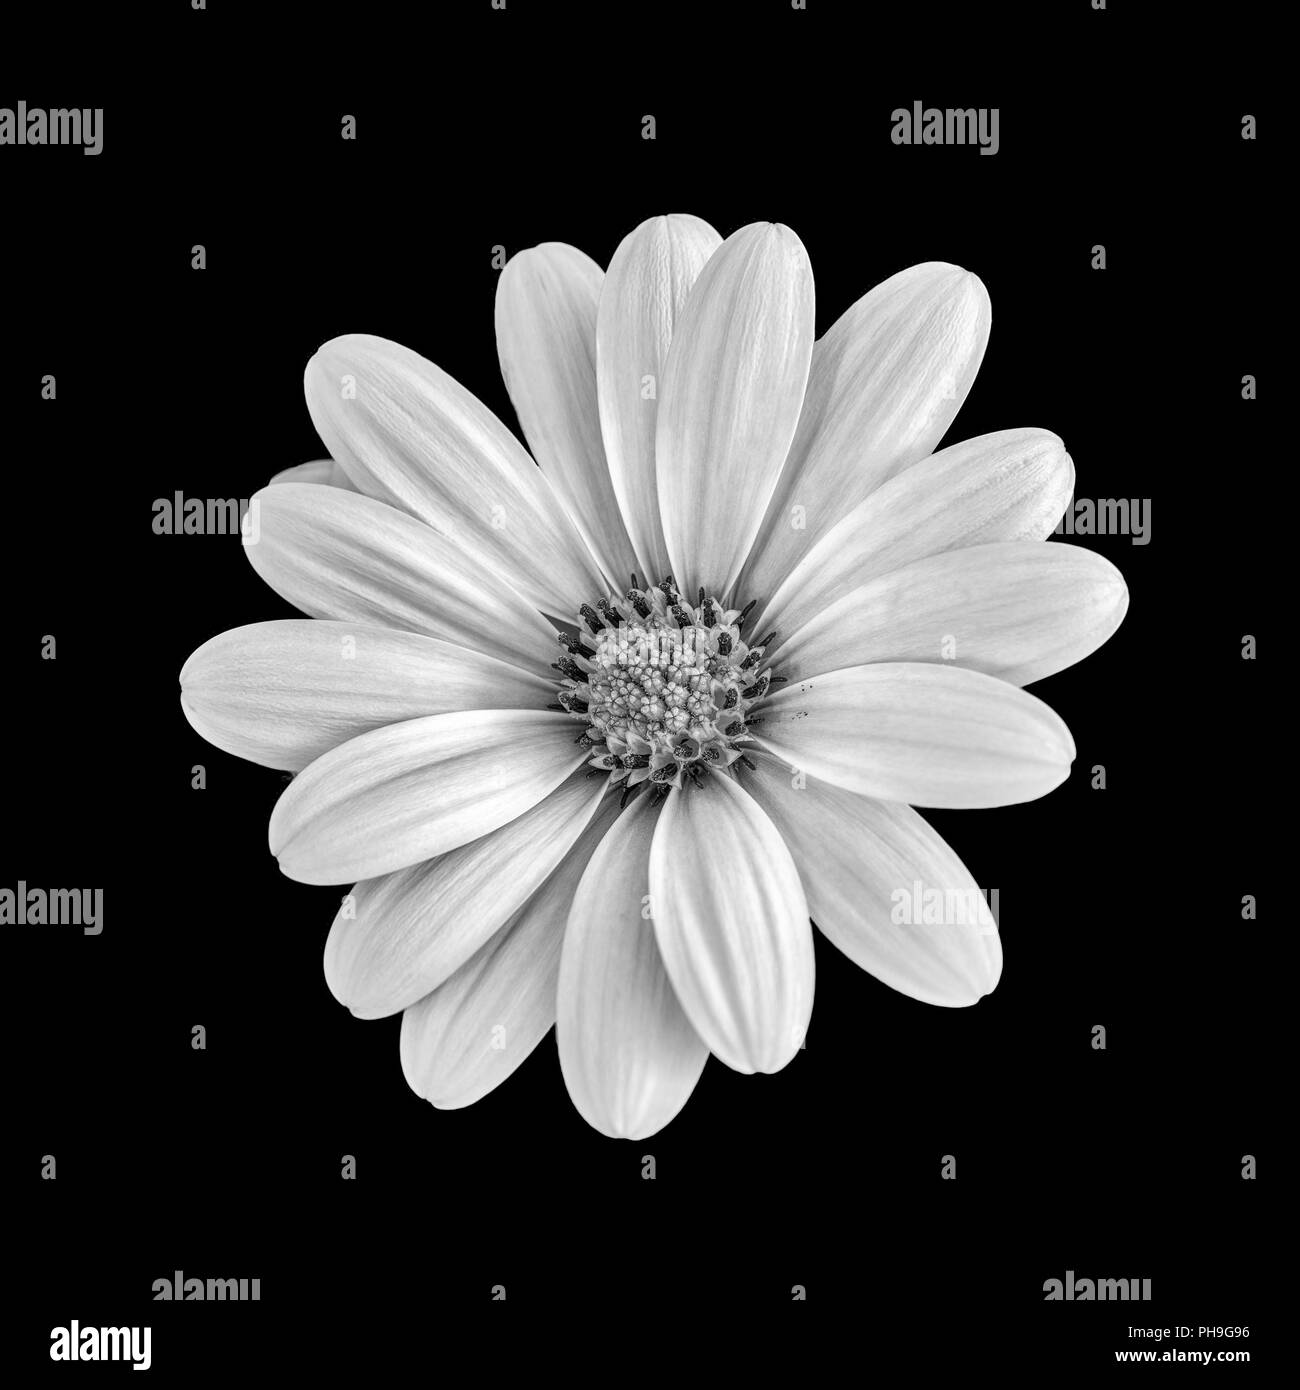 Kunst Stillleben Blume makro Schwarzweiß-Bild einer weit geöffnet blühende afrikanische Cape daisy/Marguerite Blume auf schwarzem Hintergrund Stockfoto